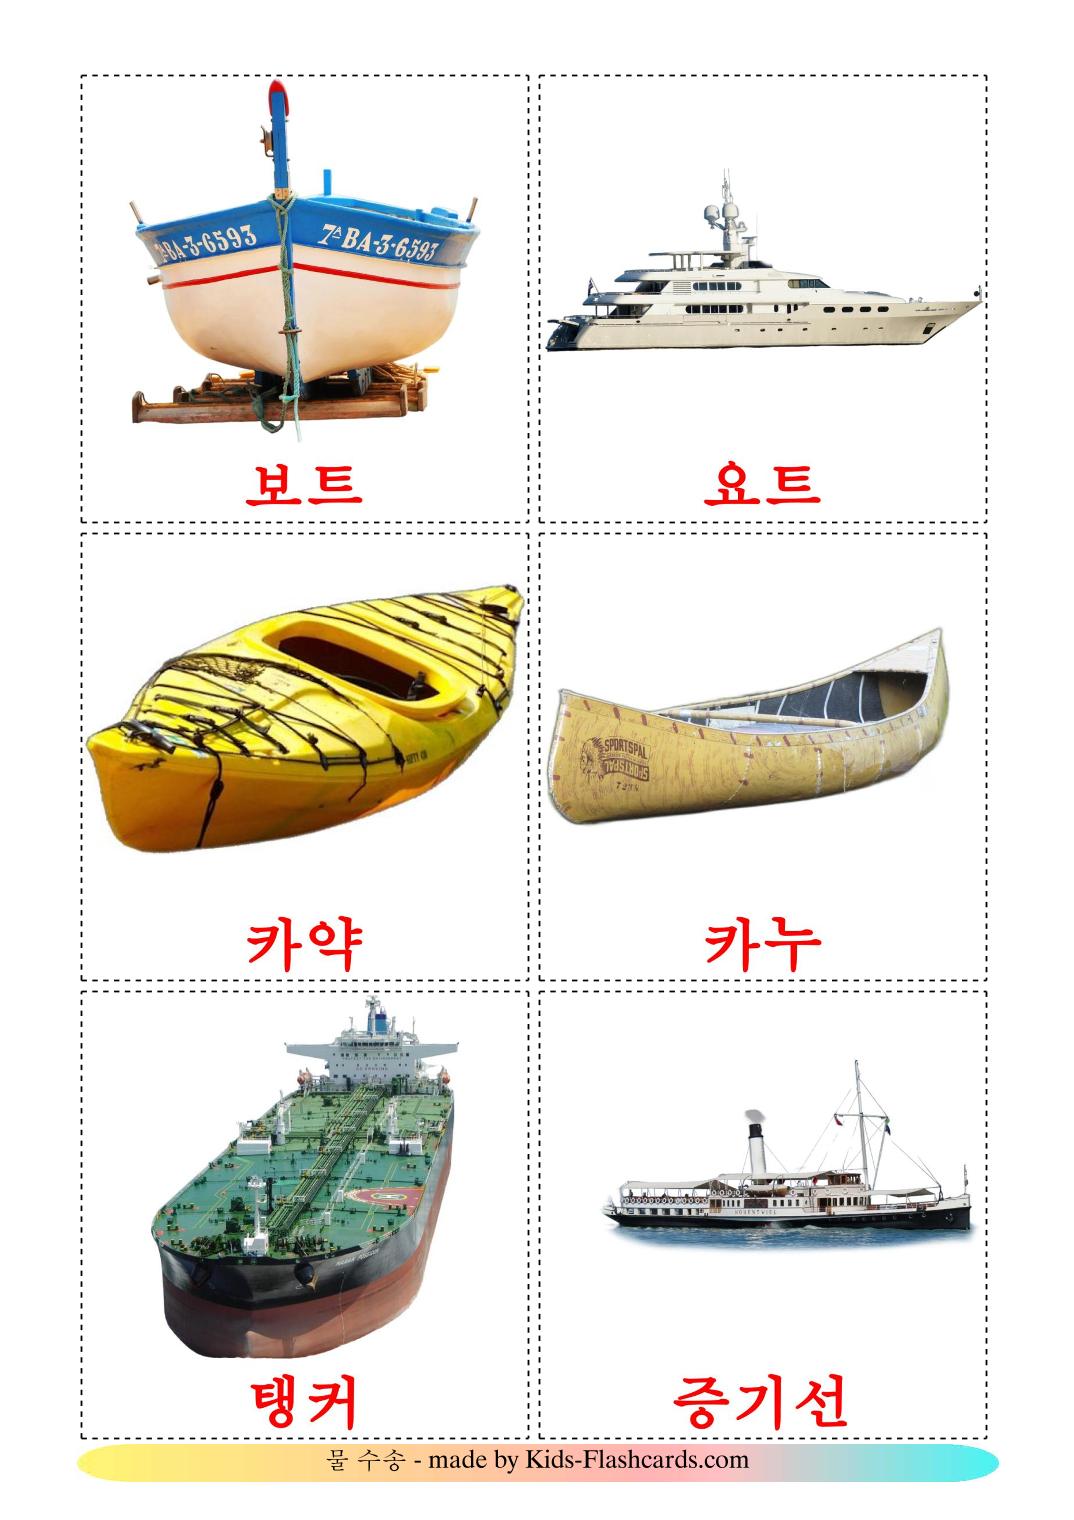 Transporte Aquático - 18 Flashcards coreanoes gratuitos para impressão